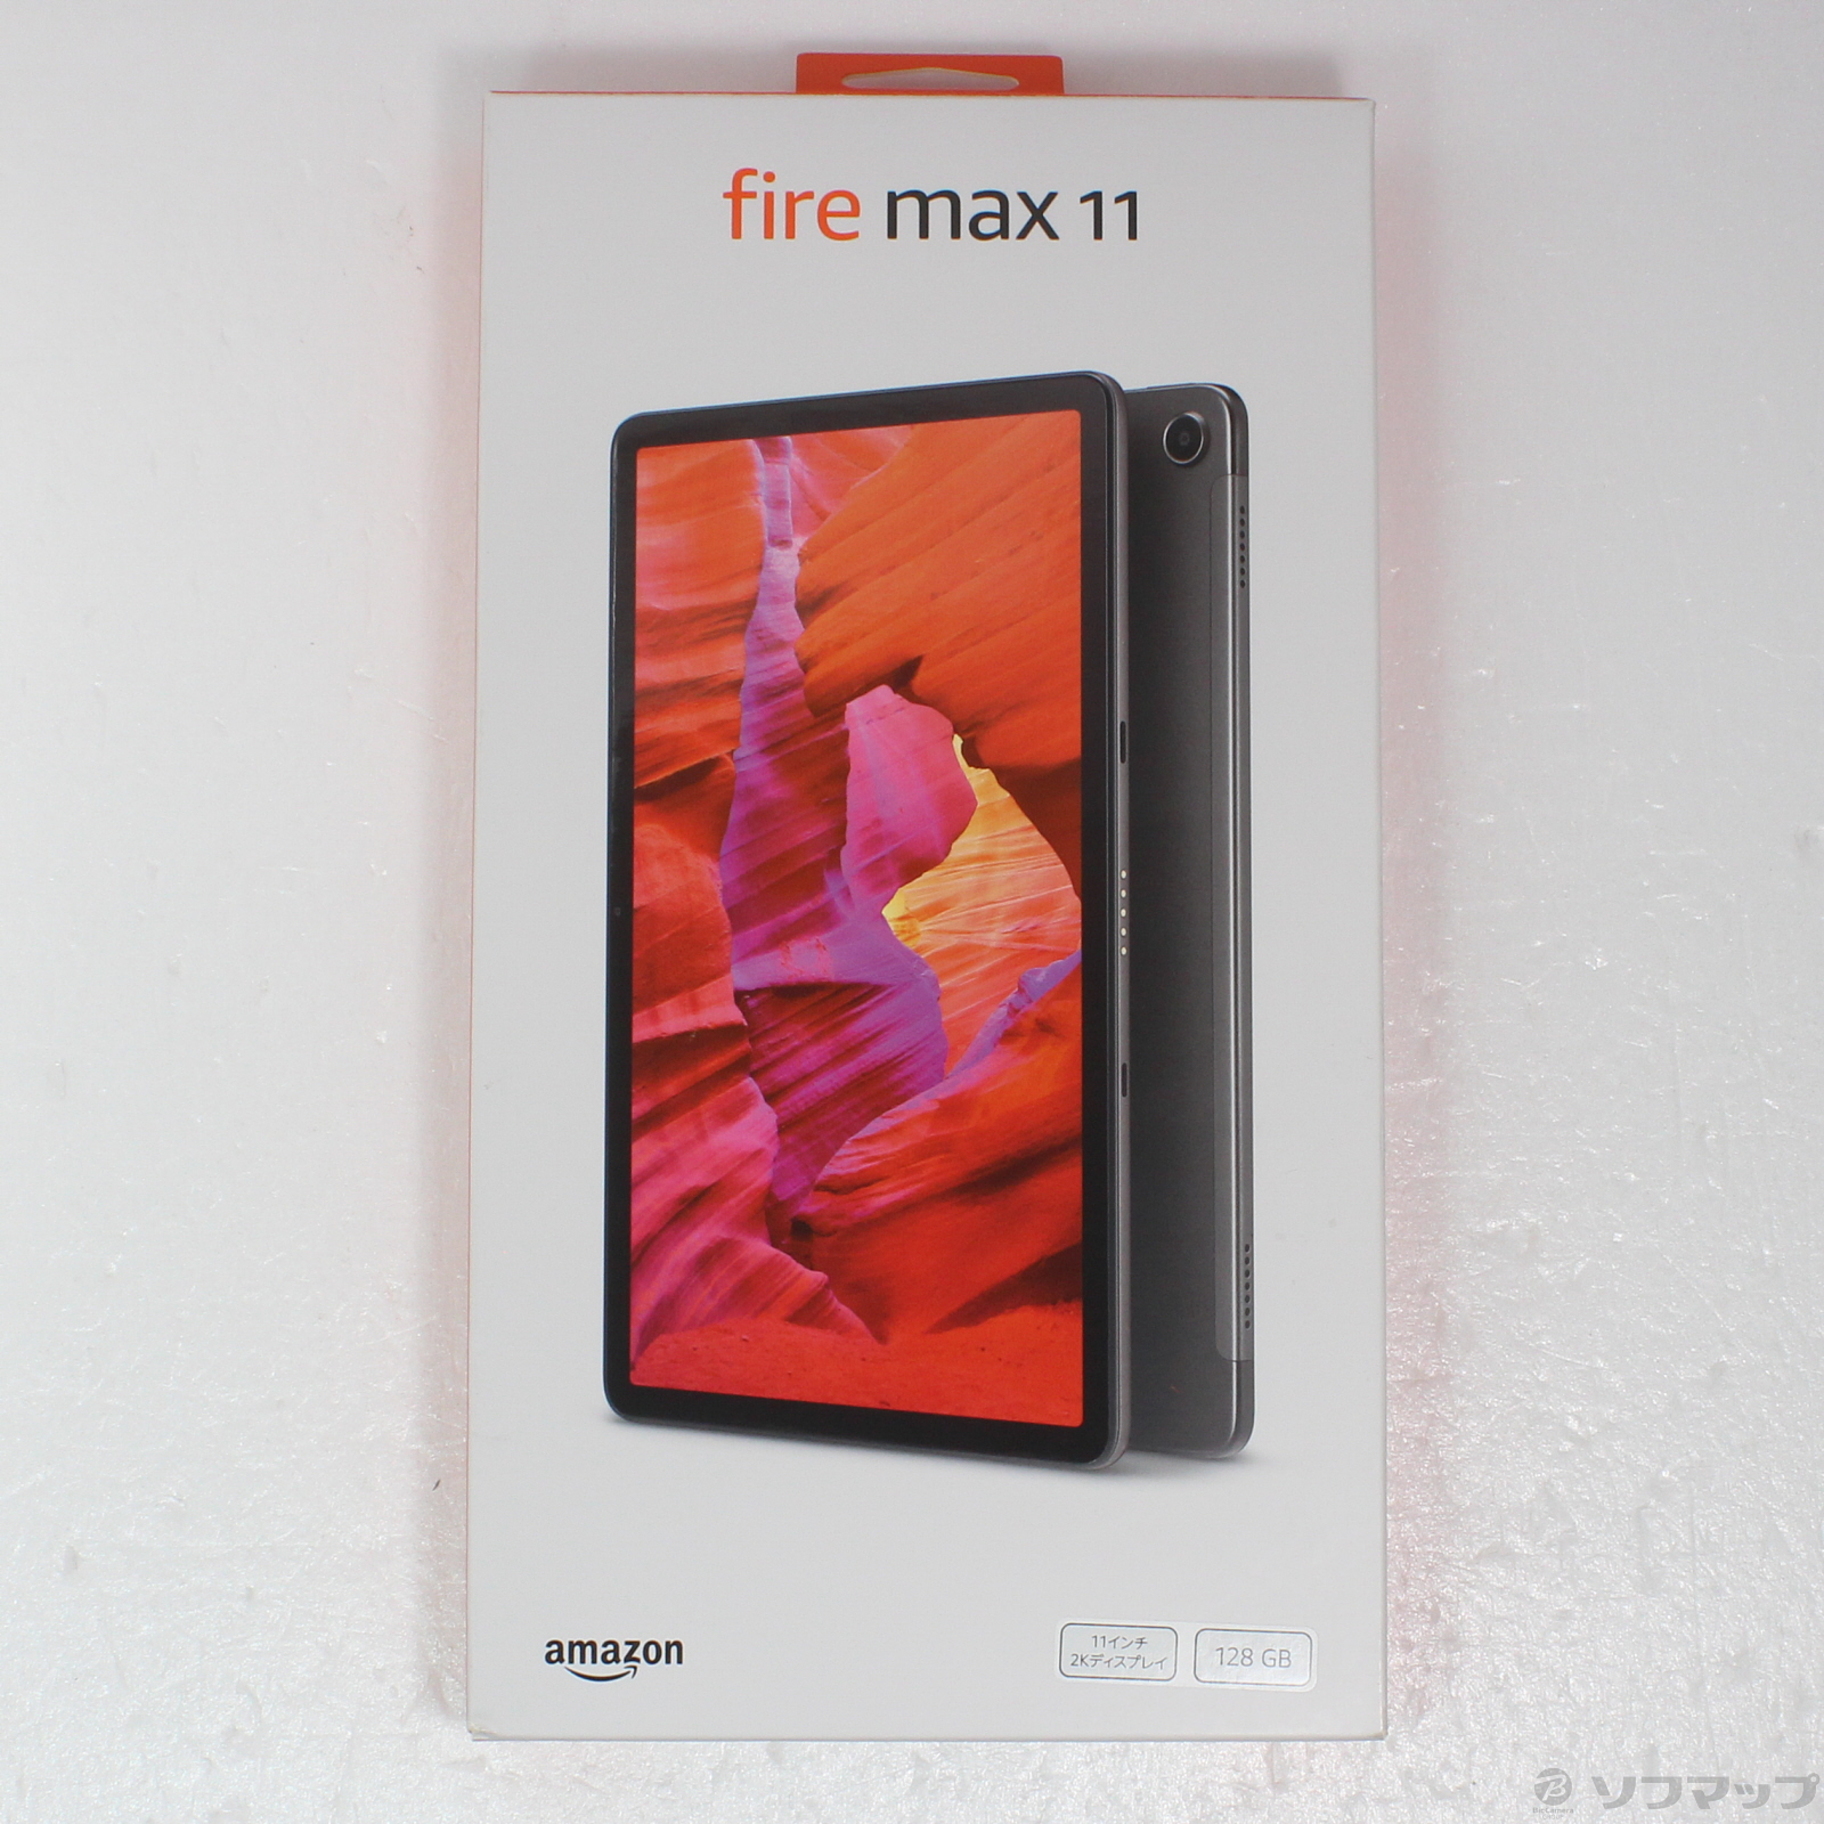 【新品未開封】fire max 11 /128GB購入からどれぐらいたってますか